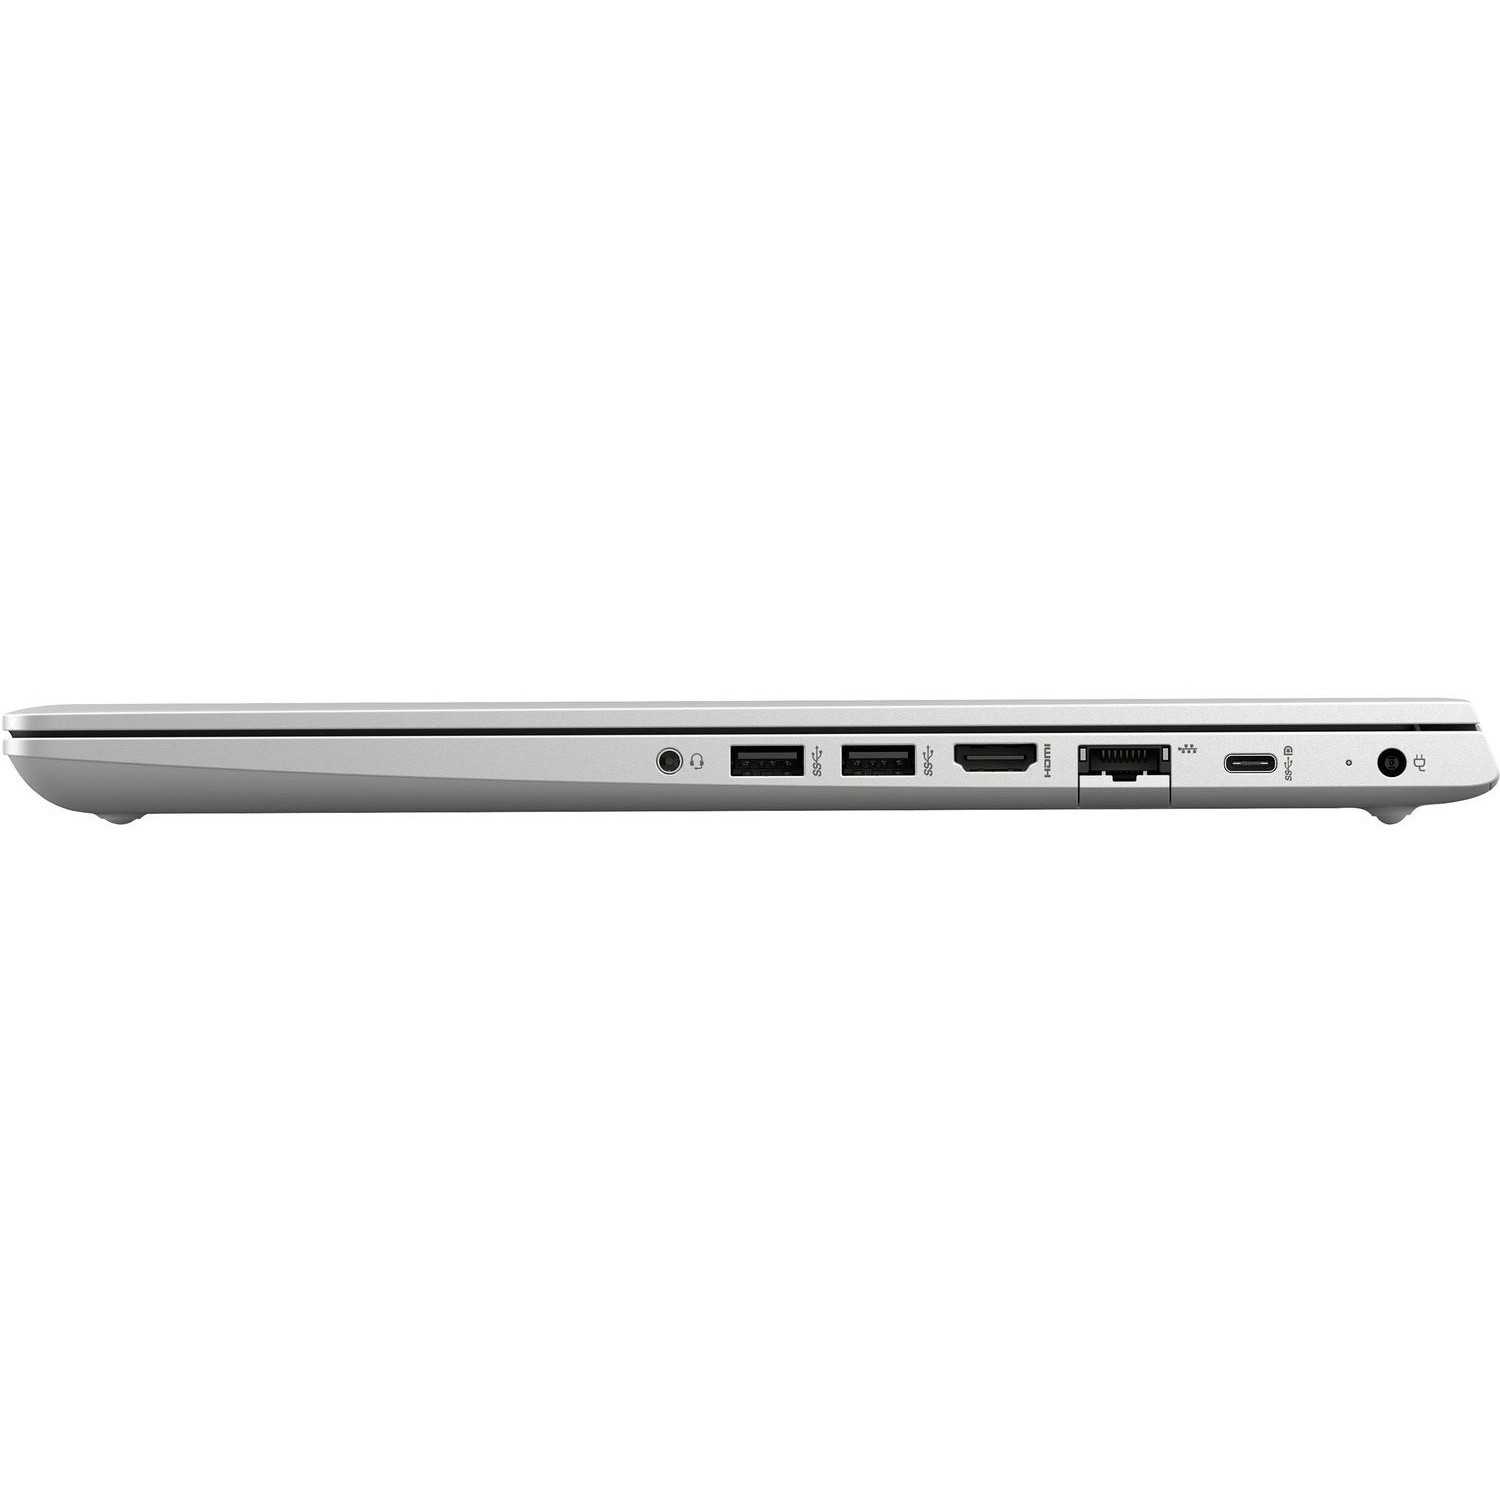 Ноутбук hp probook 430 g4 (y7z45ea) — купить, цена и характеристики, отзывы